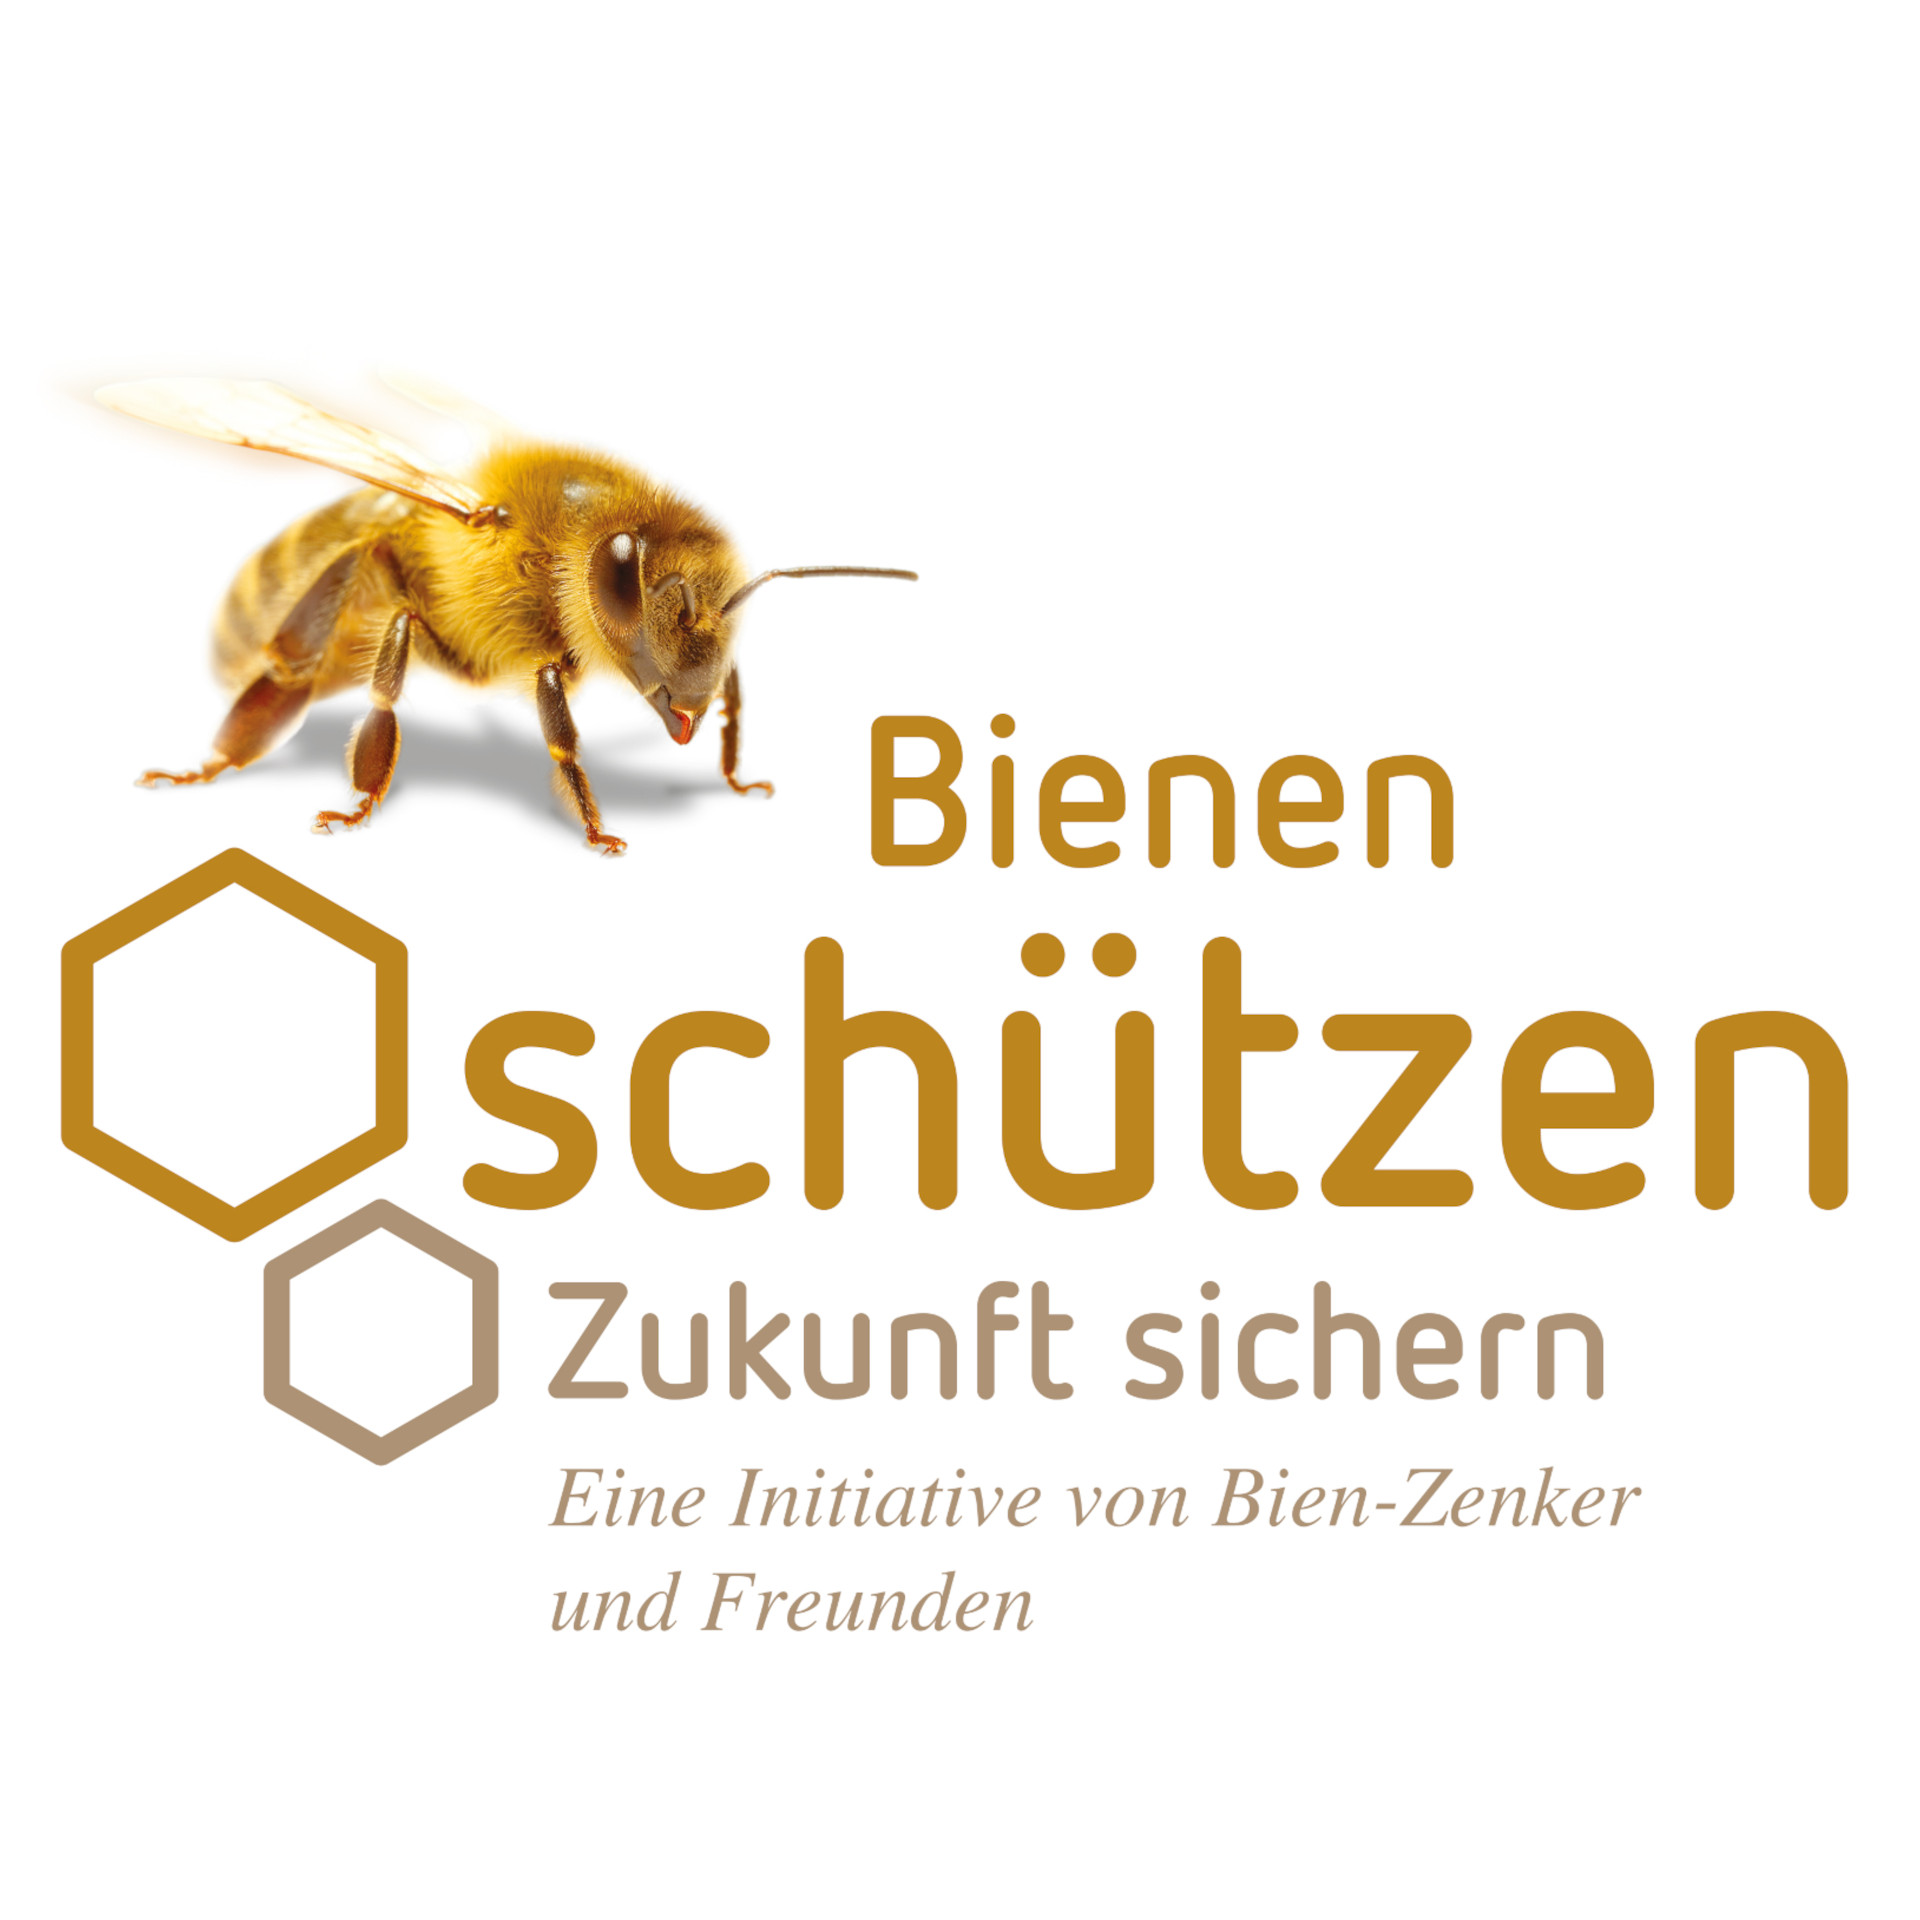 Bienen sind für Bien-Zenker Vorbild bei der Fertighaus-Fertigung